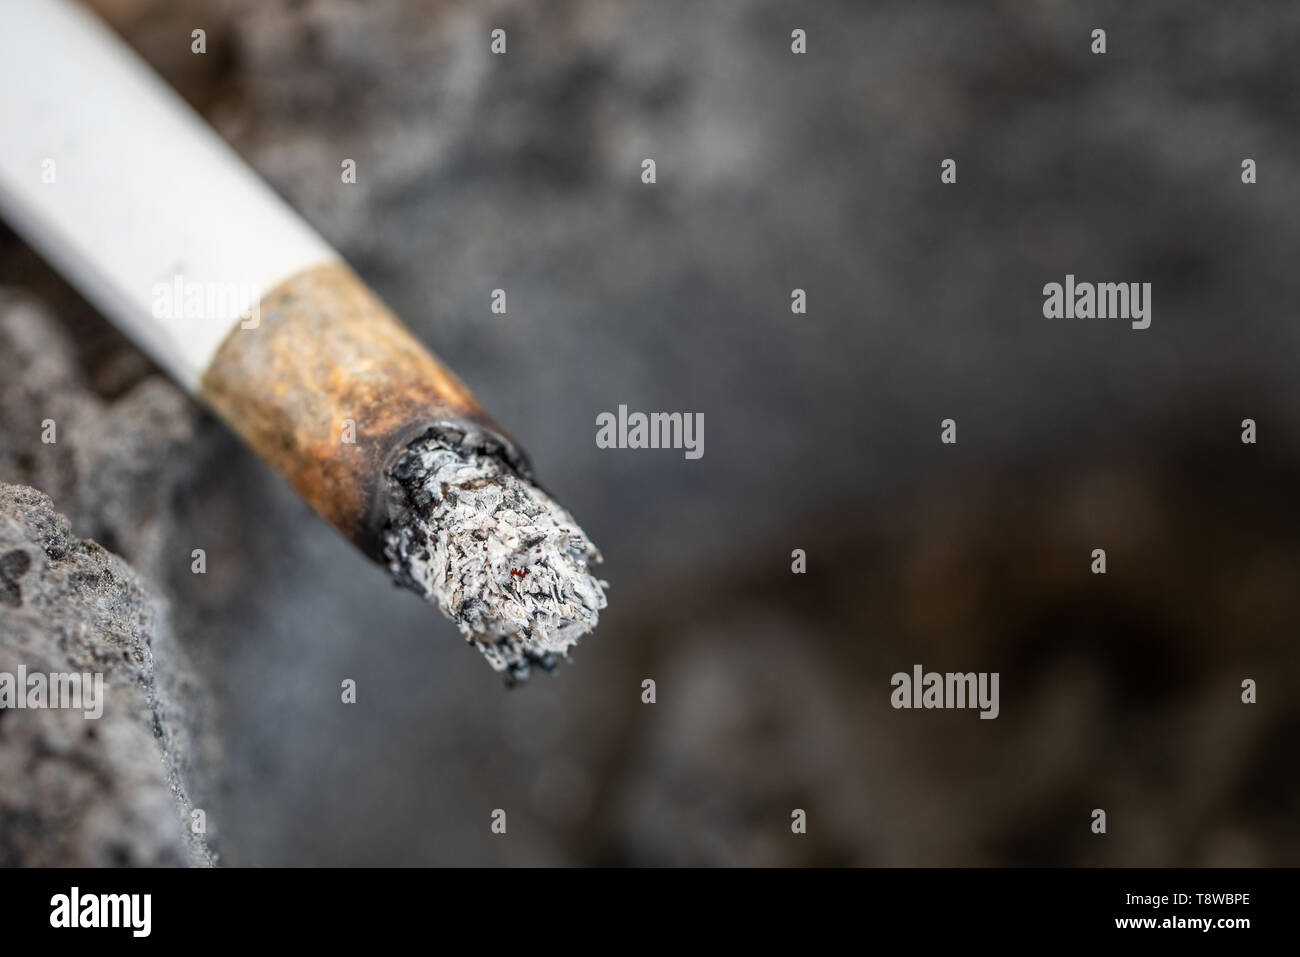 Una sigaretta senza fiamma con la cenere sul bordo di un posacenere fatta di lava solidificata. Close up. Copia dello spazio. Foto Stock